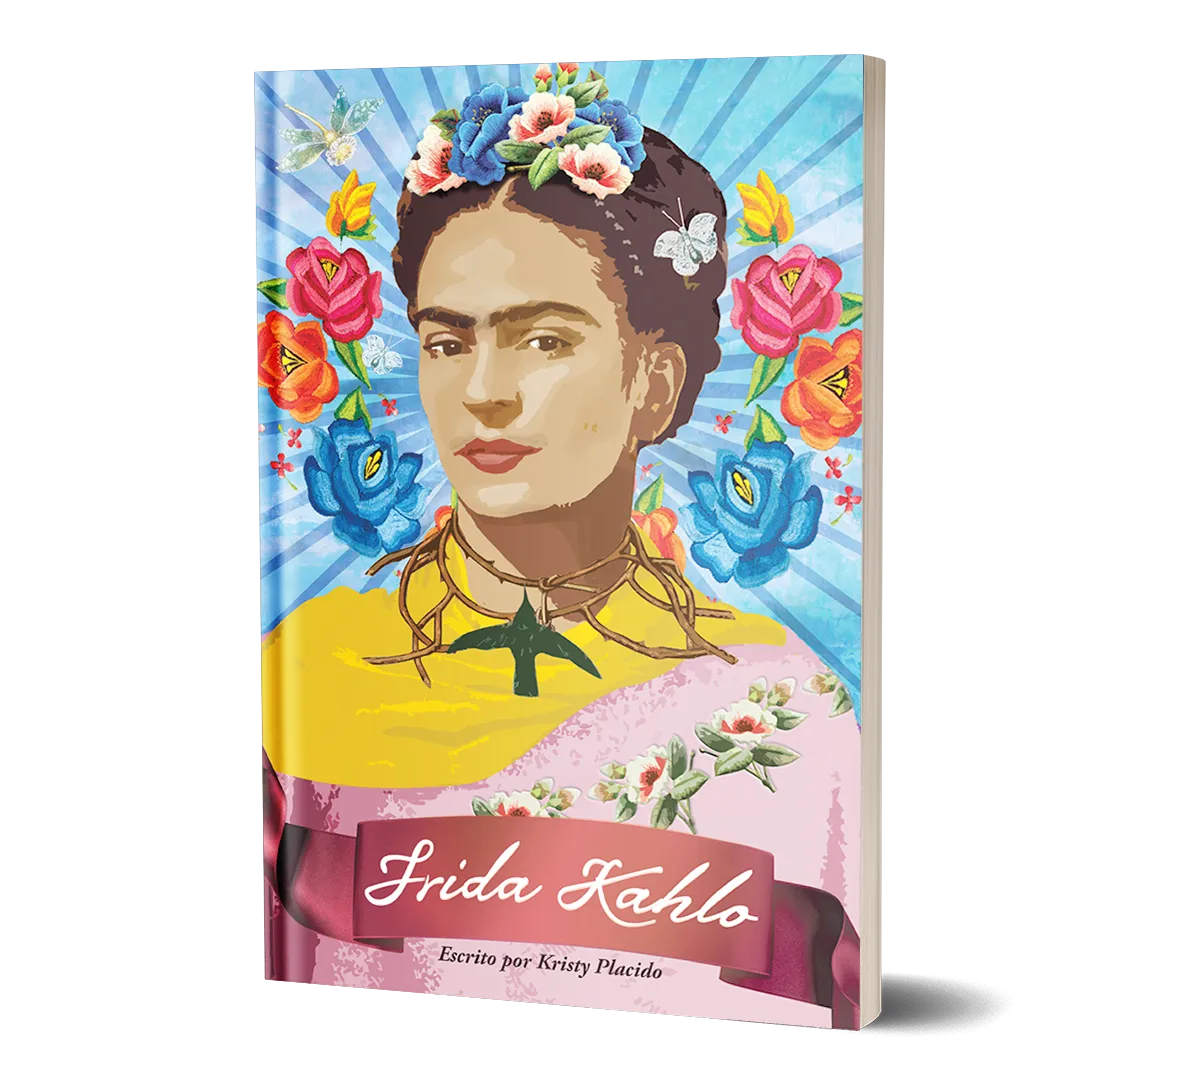 Frida Kahlo PNG Image File